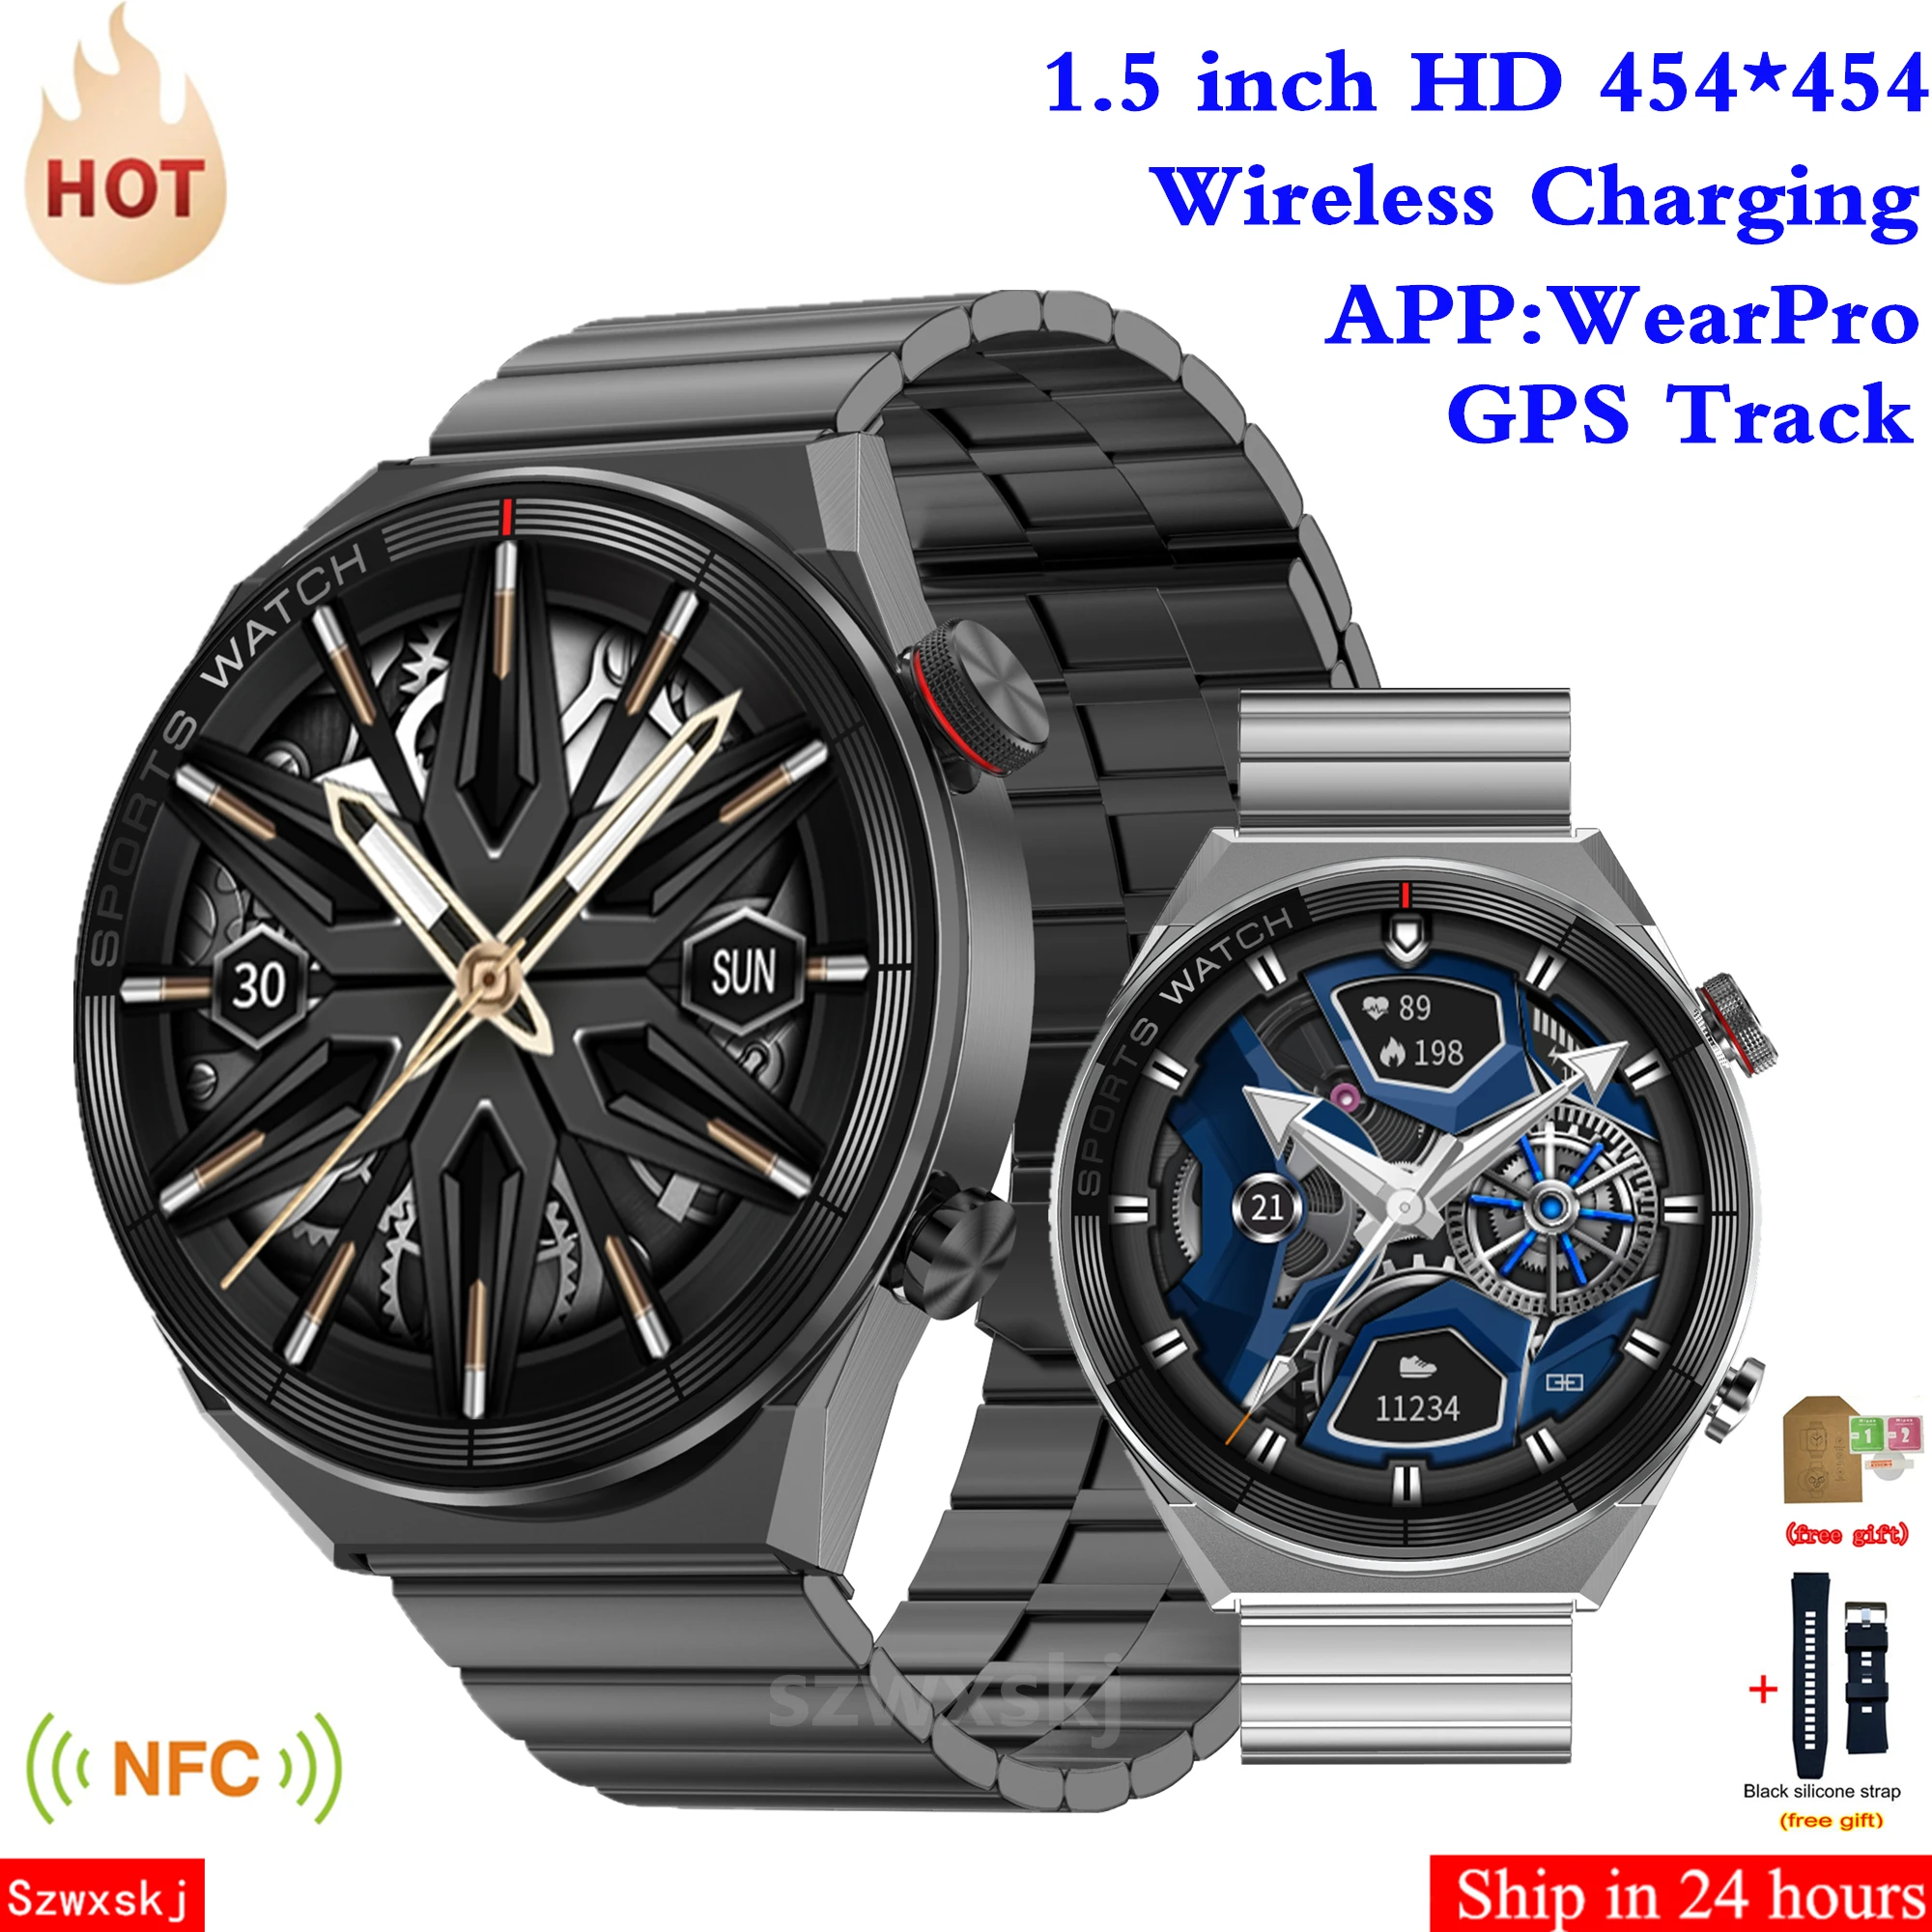 

Смарт-часы DT3 Mate мужские, экран 1,5 дюйма 454*454, NFC, Bluetooth, голосовой помощник, фитнес-браслет, Беспроводная зарядка, Смарт-часы